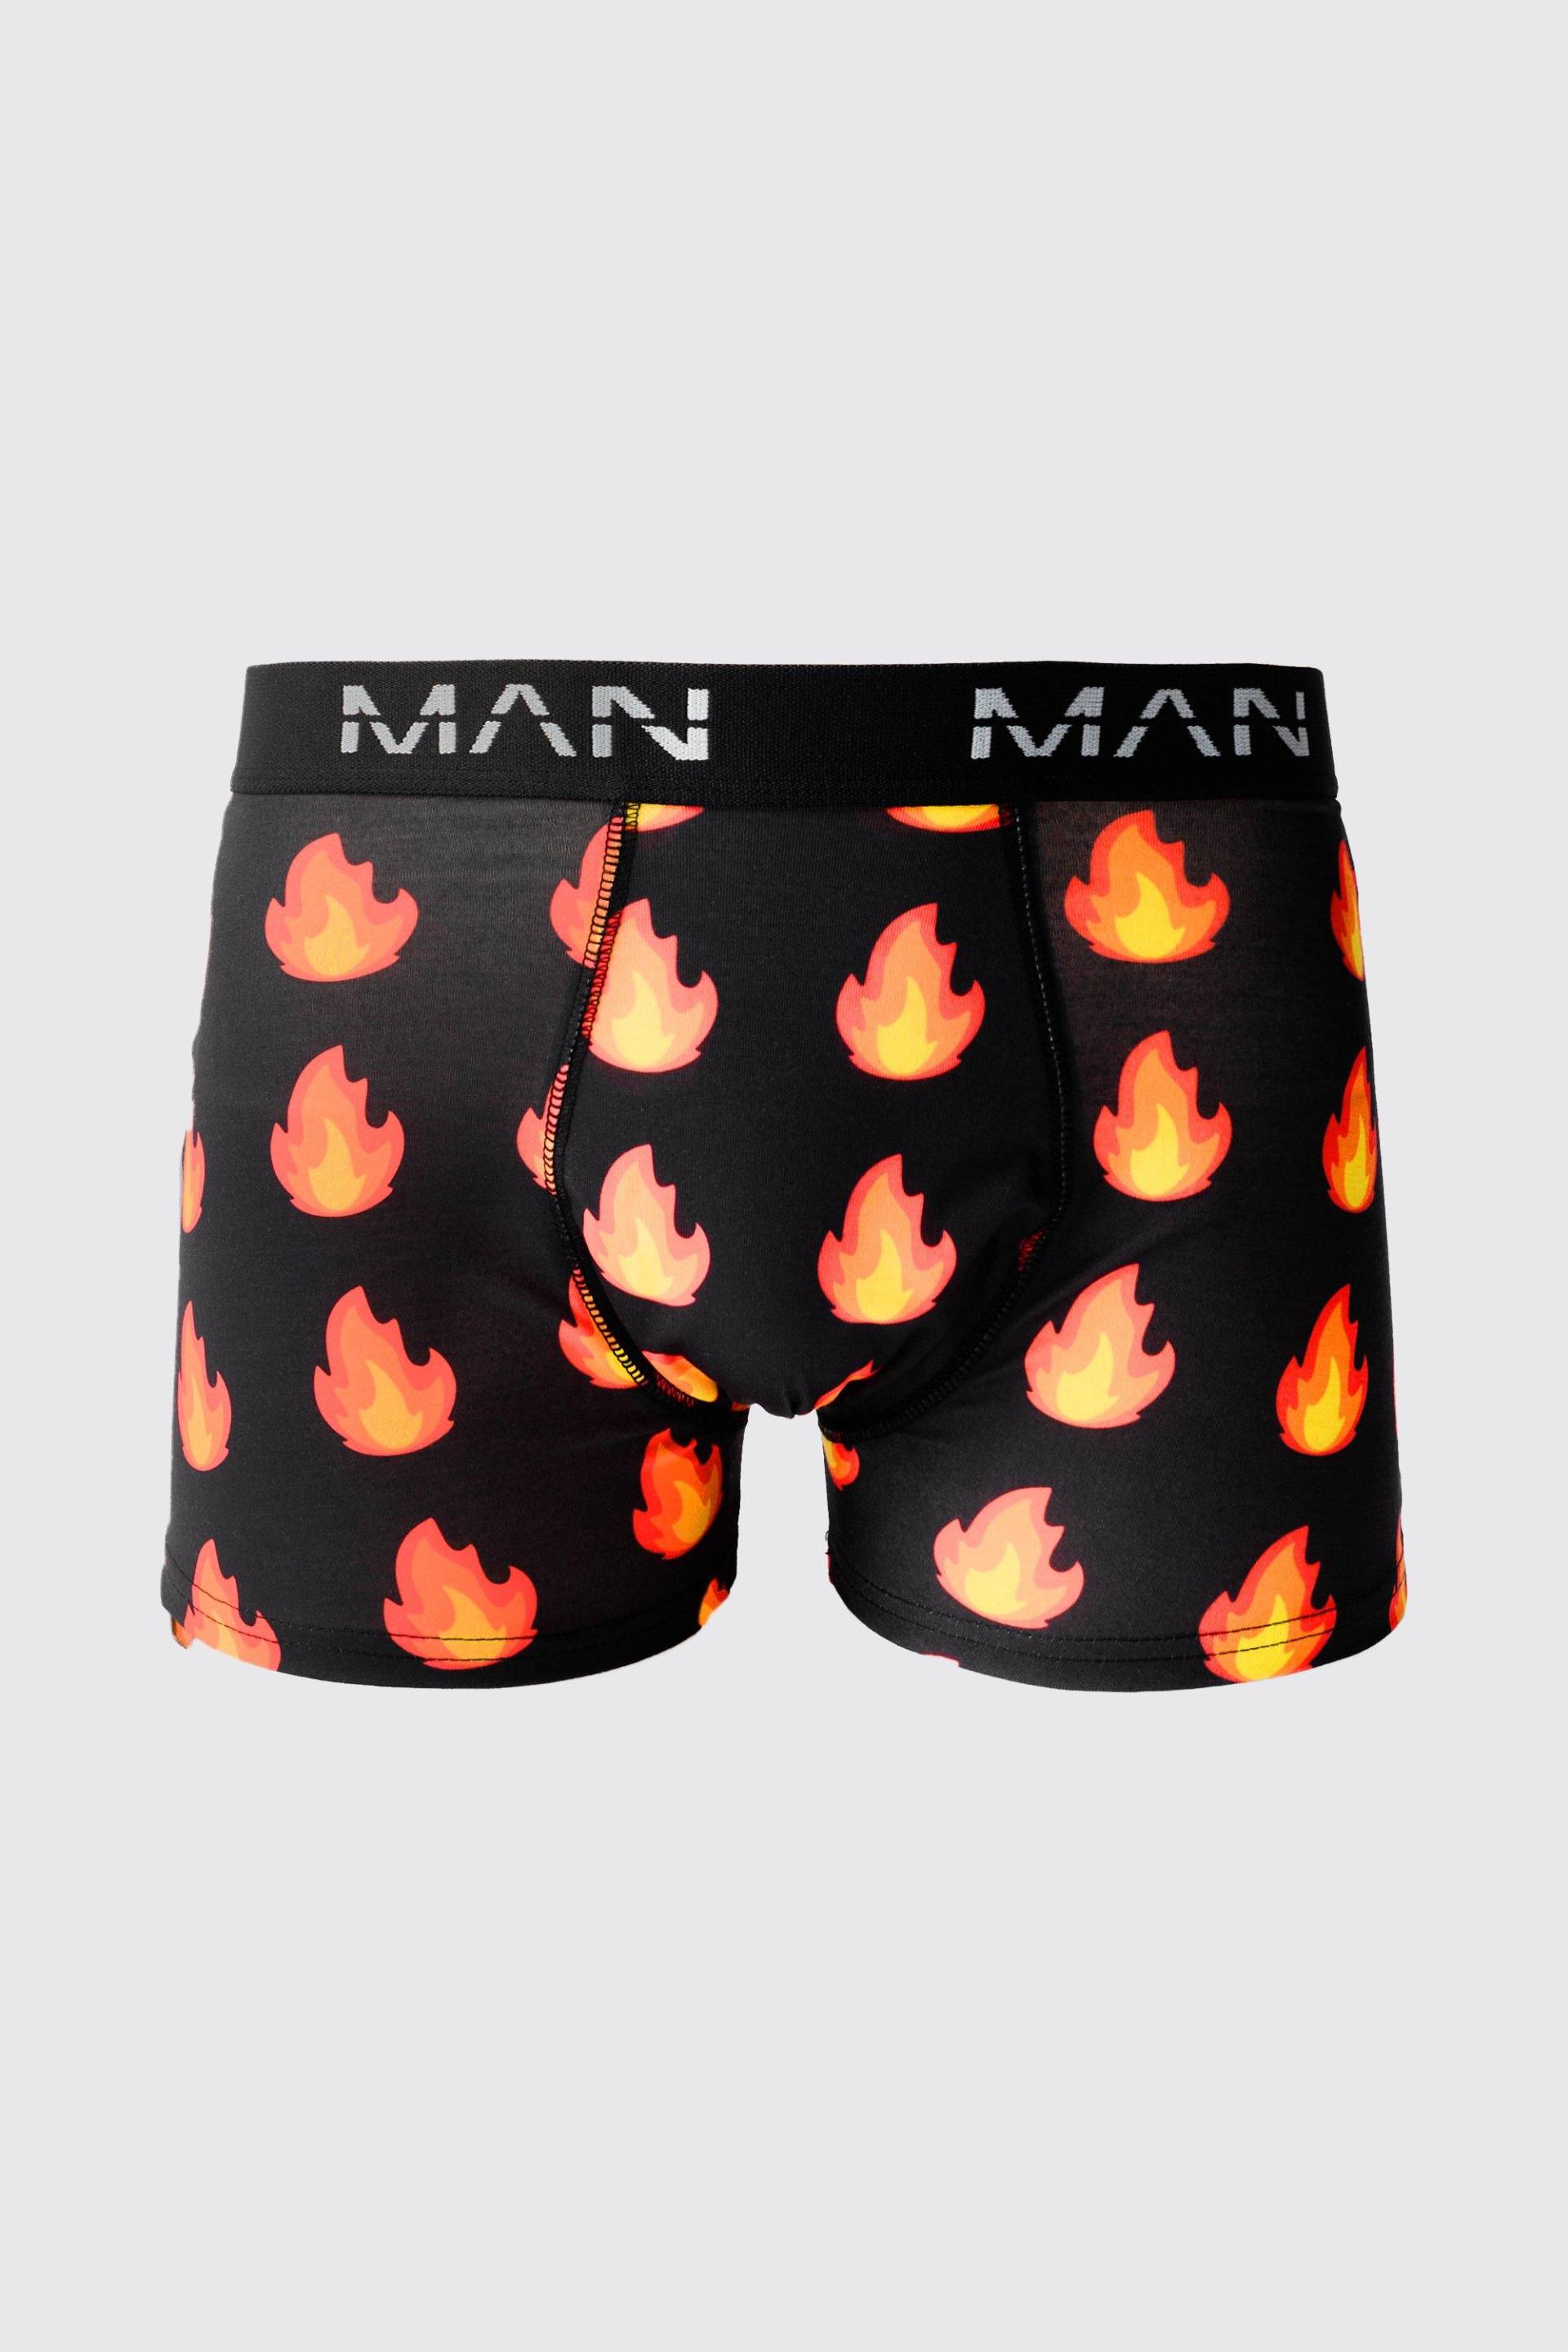 Mens Man Boxershorts mit Flammen-Print - Mehrfarbig - S, Mehrfarbig von boohooman